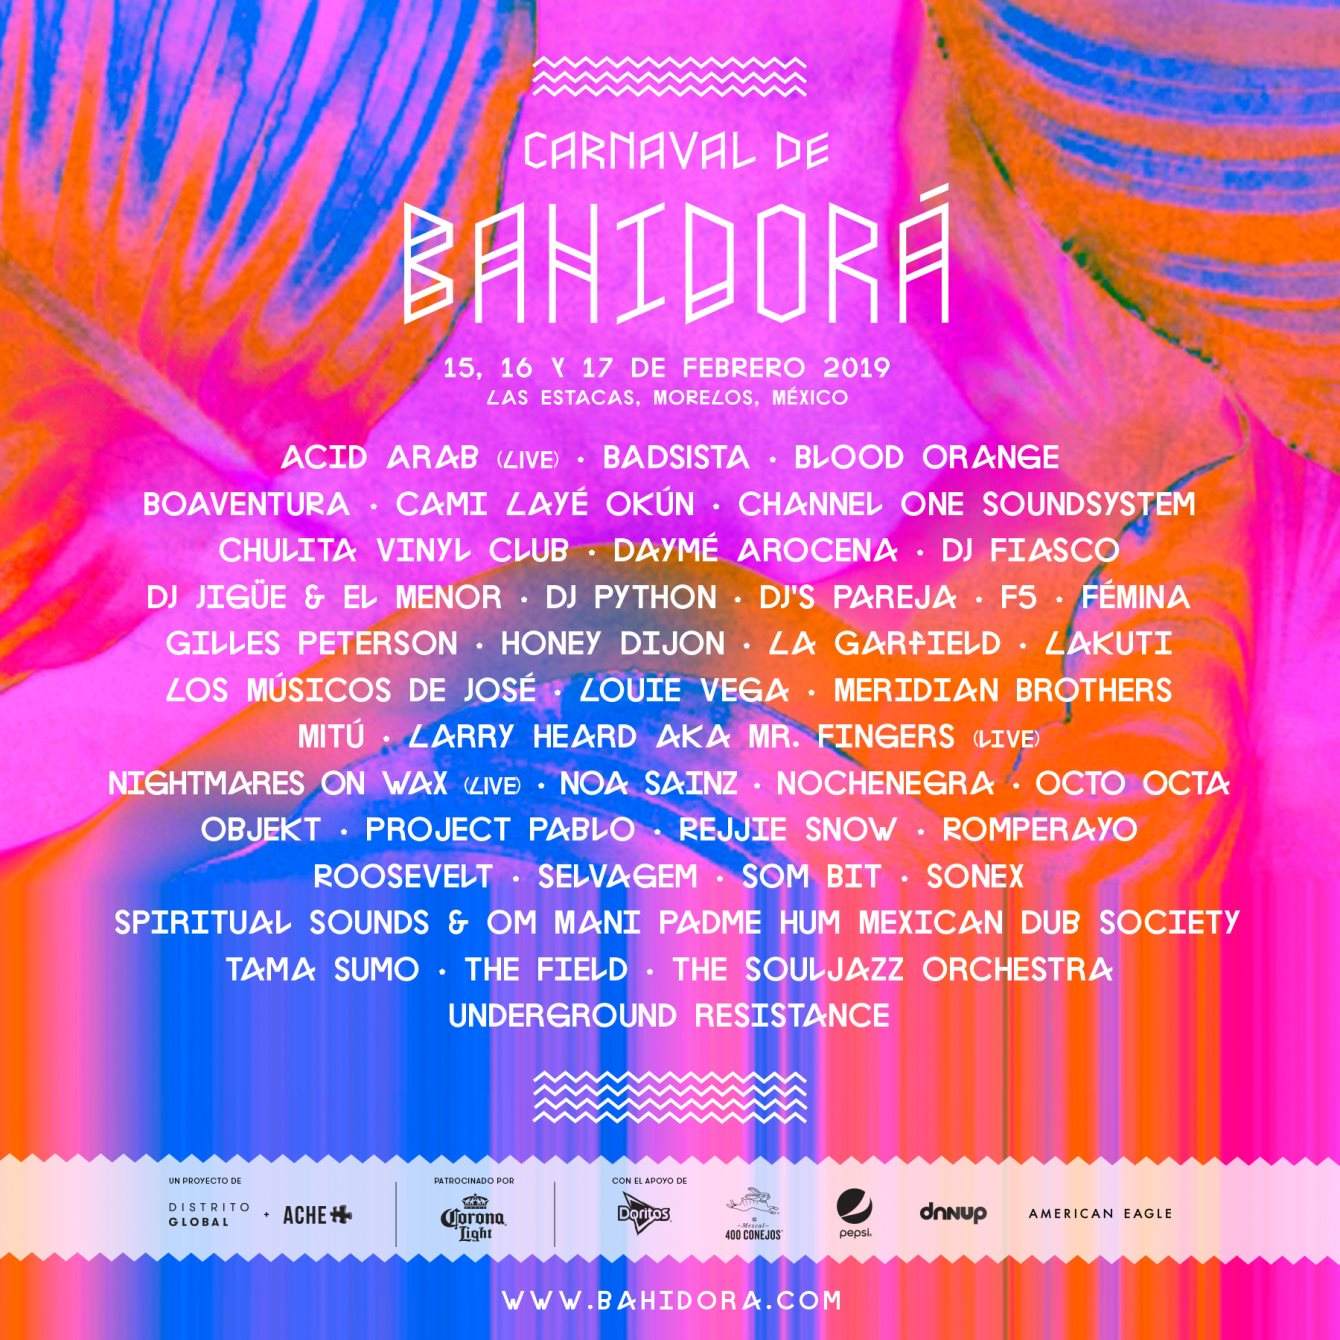 Carnaval de Bahidorá 2019 - Página frontal